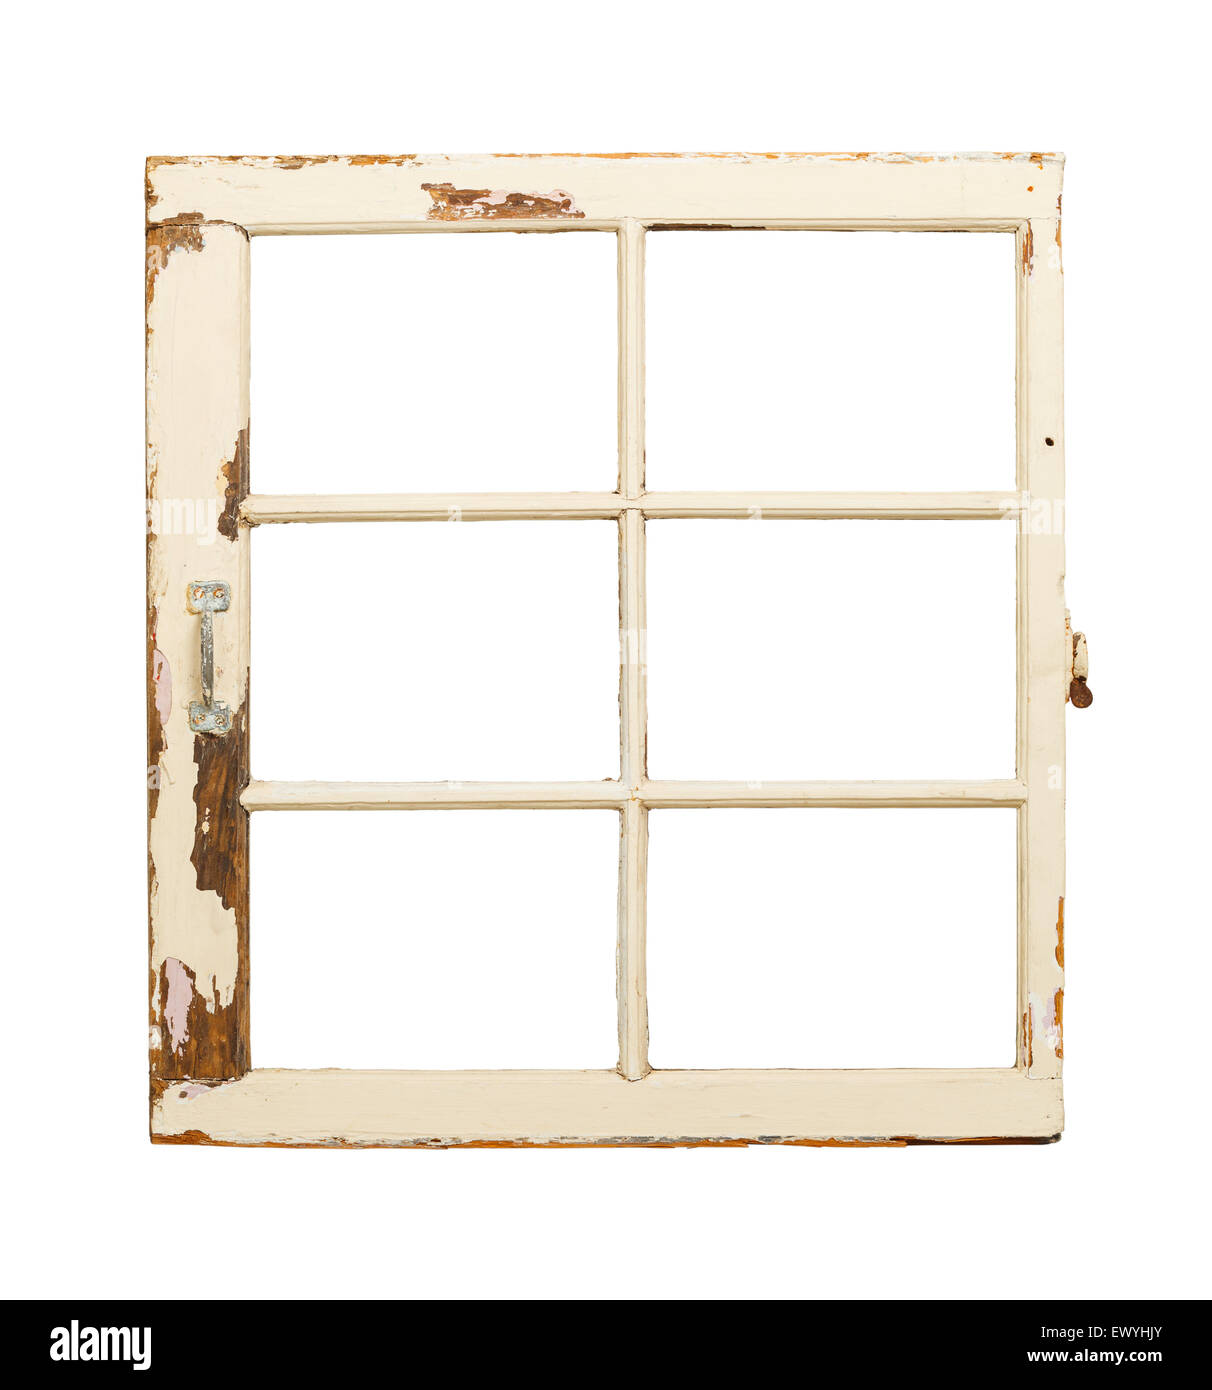 Vecchio rustico finestra con impugnatura isolata su sfondo bianco. Foto Stock